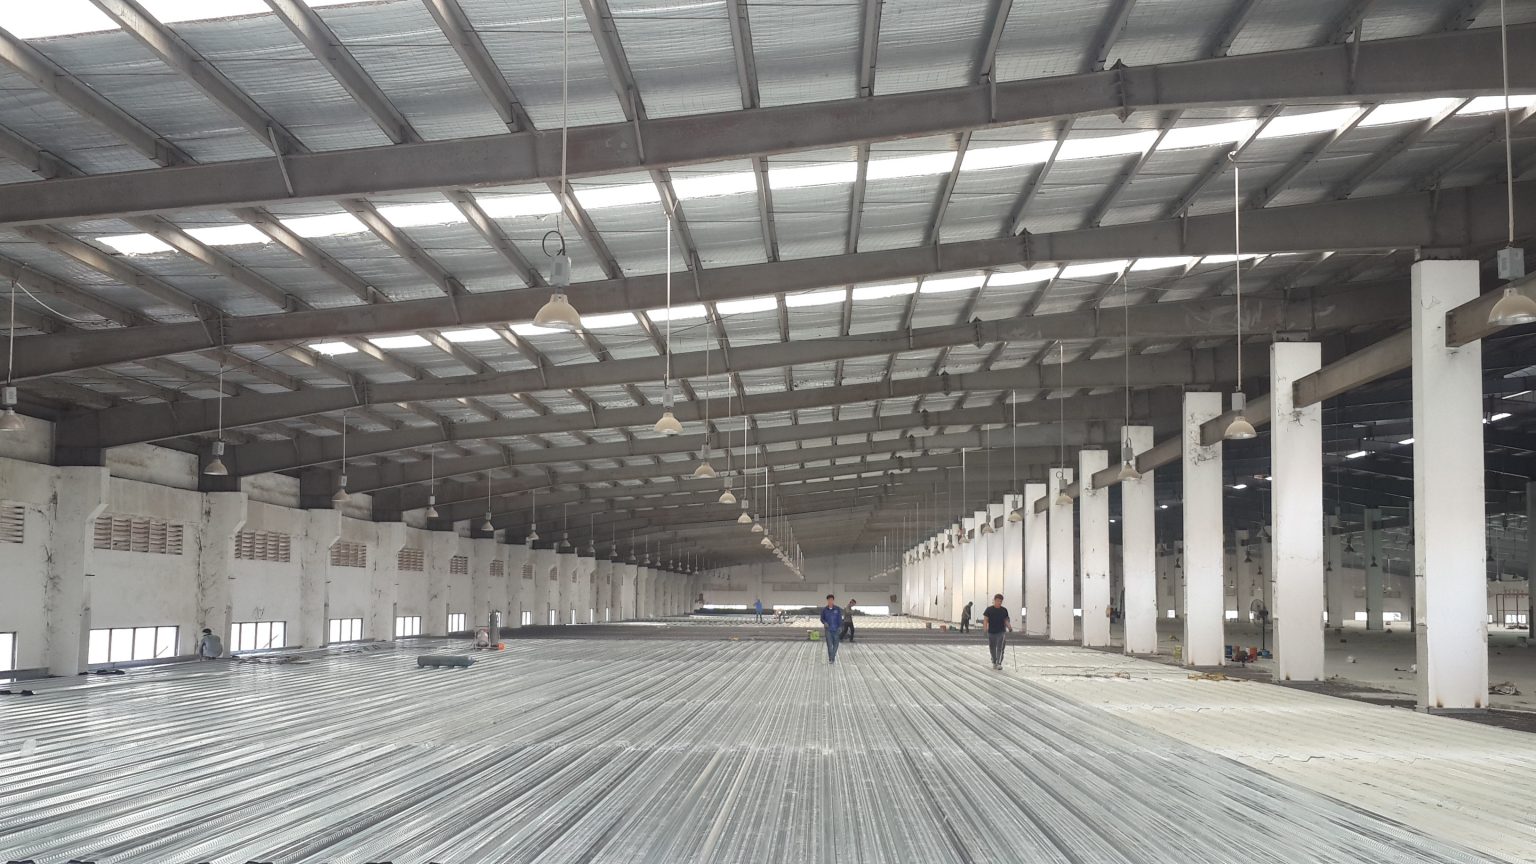 Tìm hiểu quy trình thiết kế dầm sàn nhà xưởng công nghiệp Thiet-ke-dam-san-nha-xuong-1-1536x864